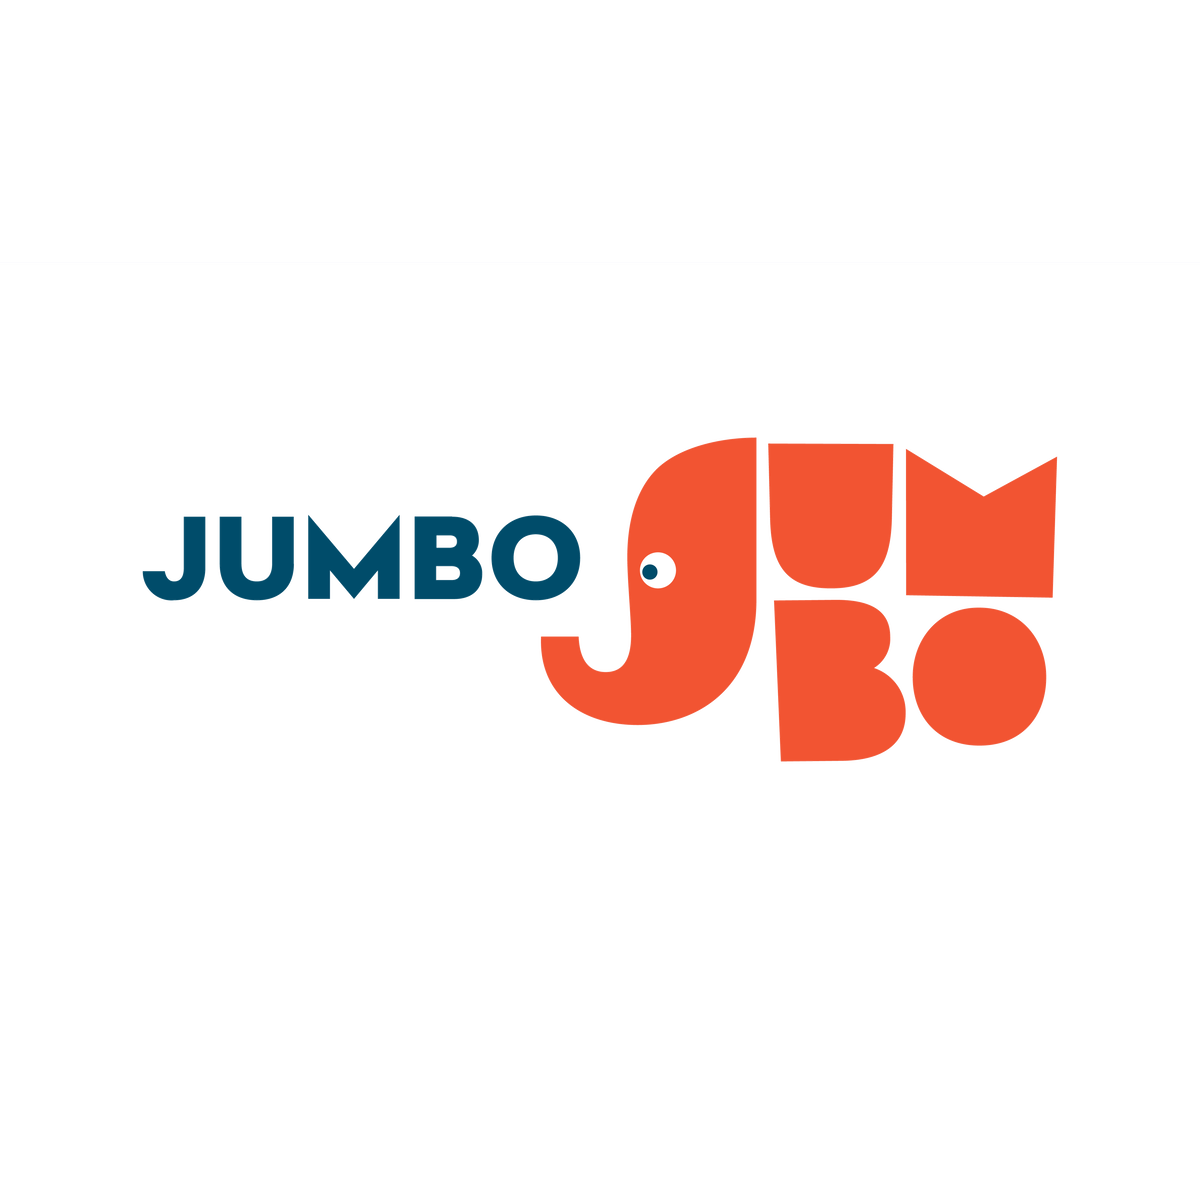 About Jumbo - Jumbo